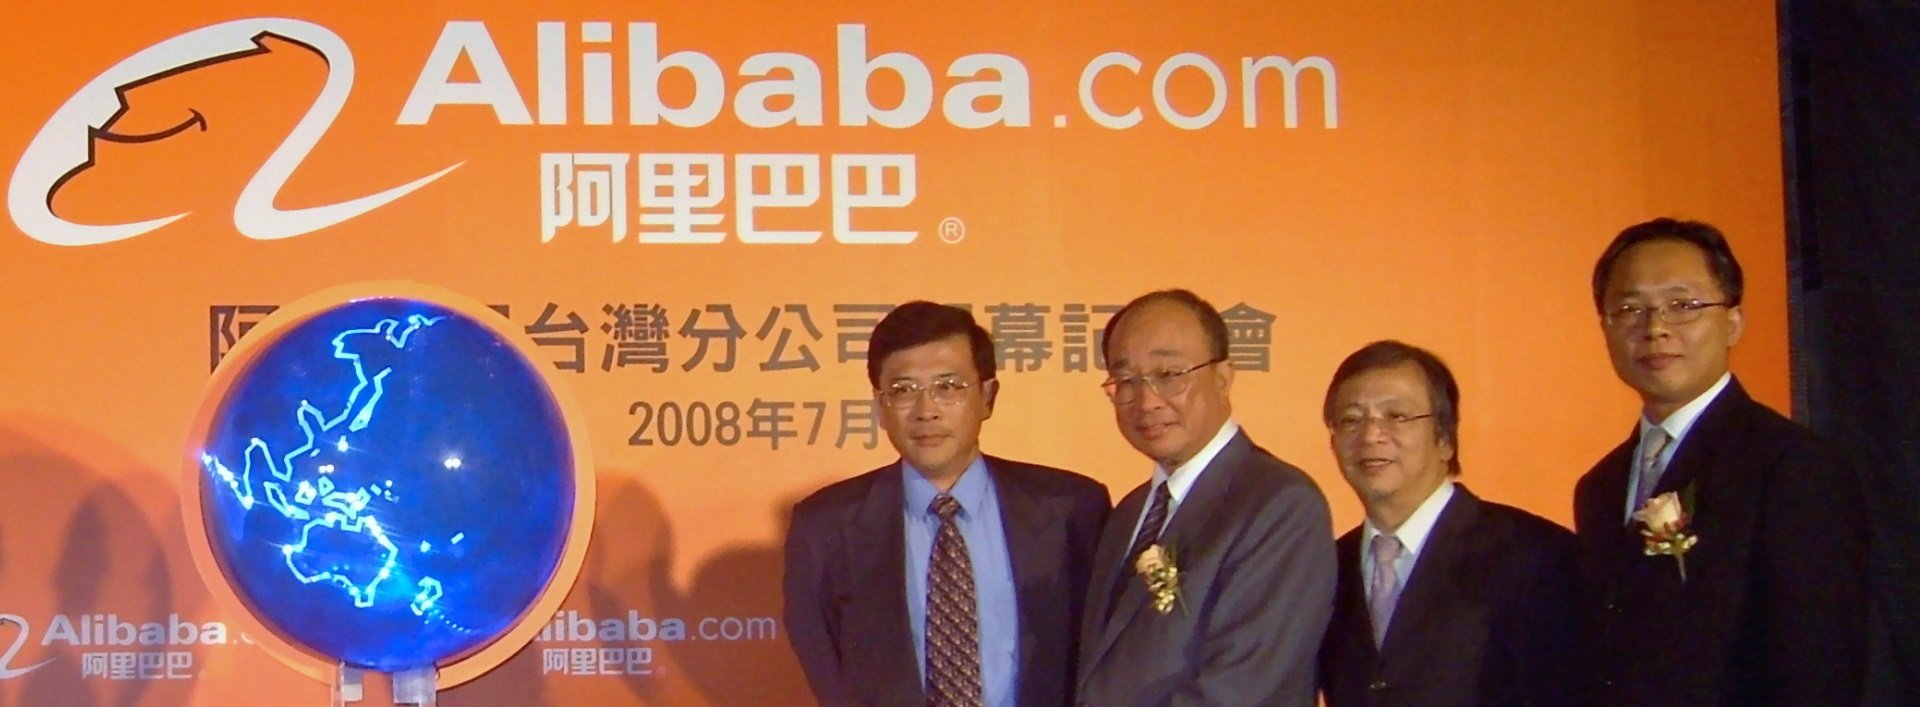 Alibaba supera con nota sus problemas regulatorios  